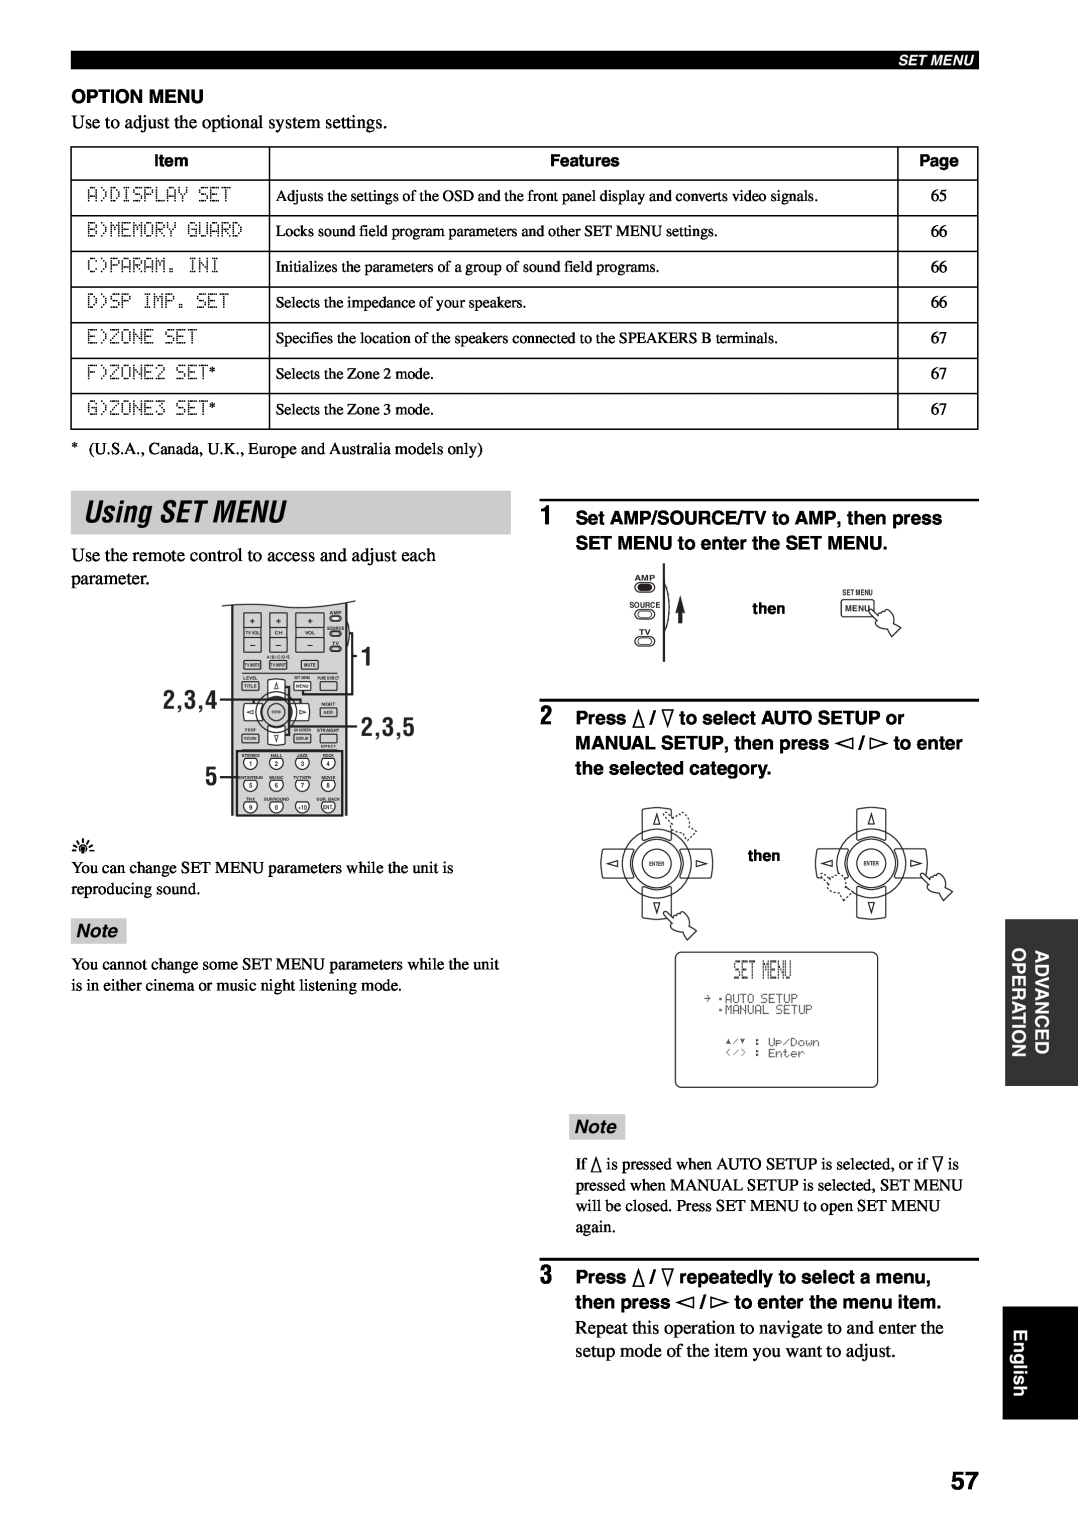 Yamaha RX-V1500 owner manual Using SET MENU, 2,3,4, 2,3,5 